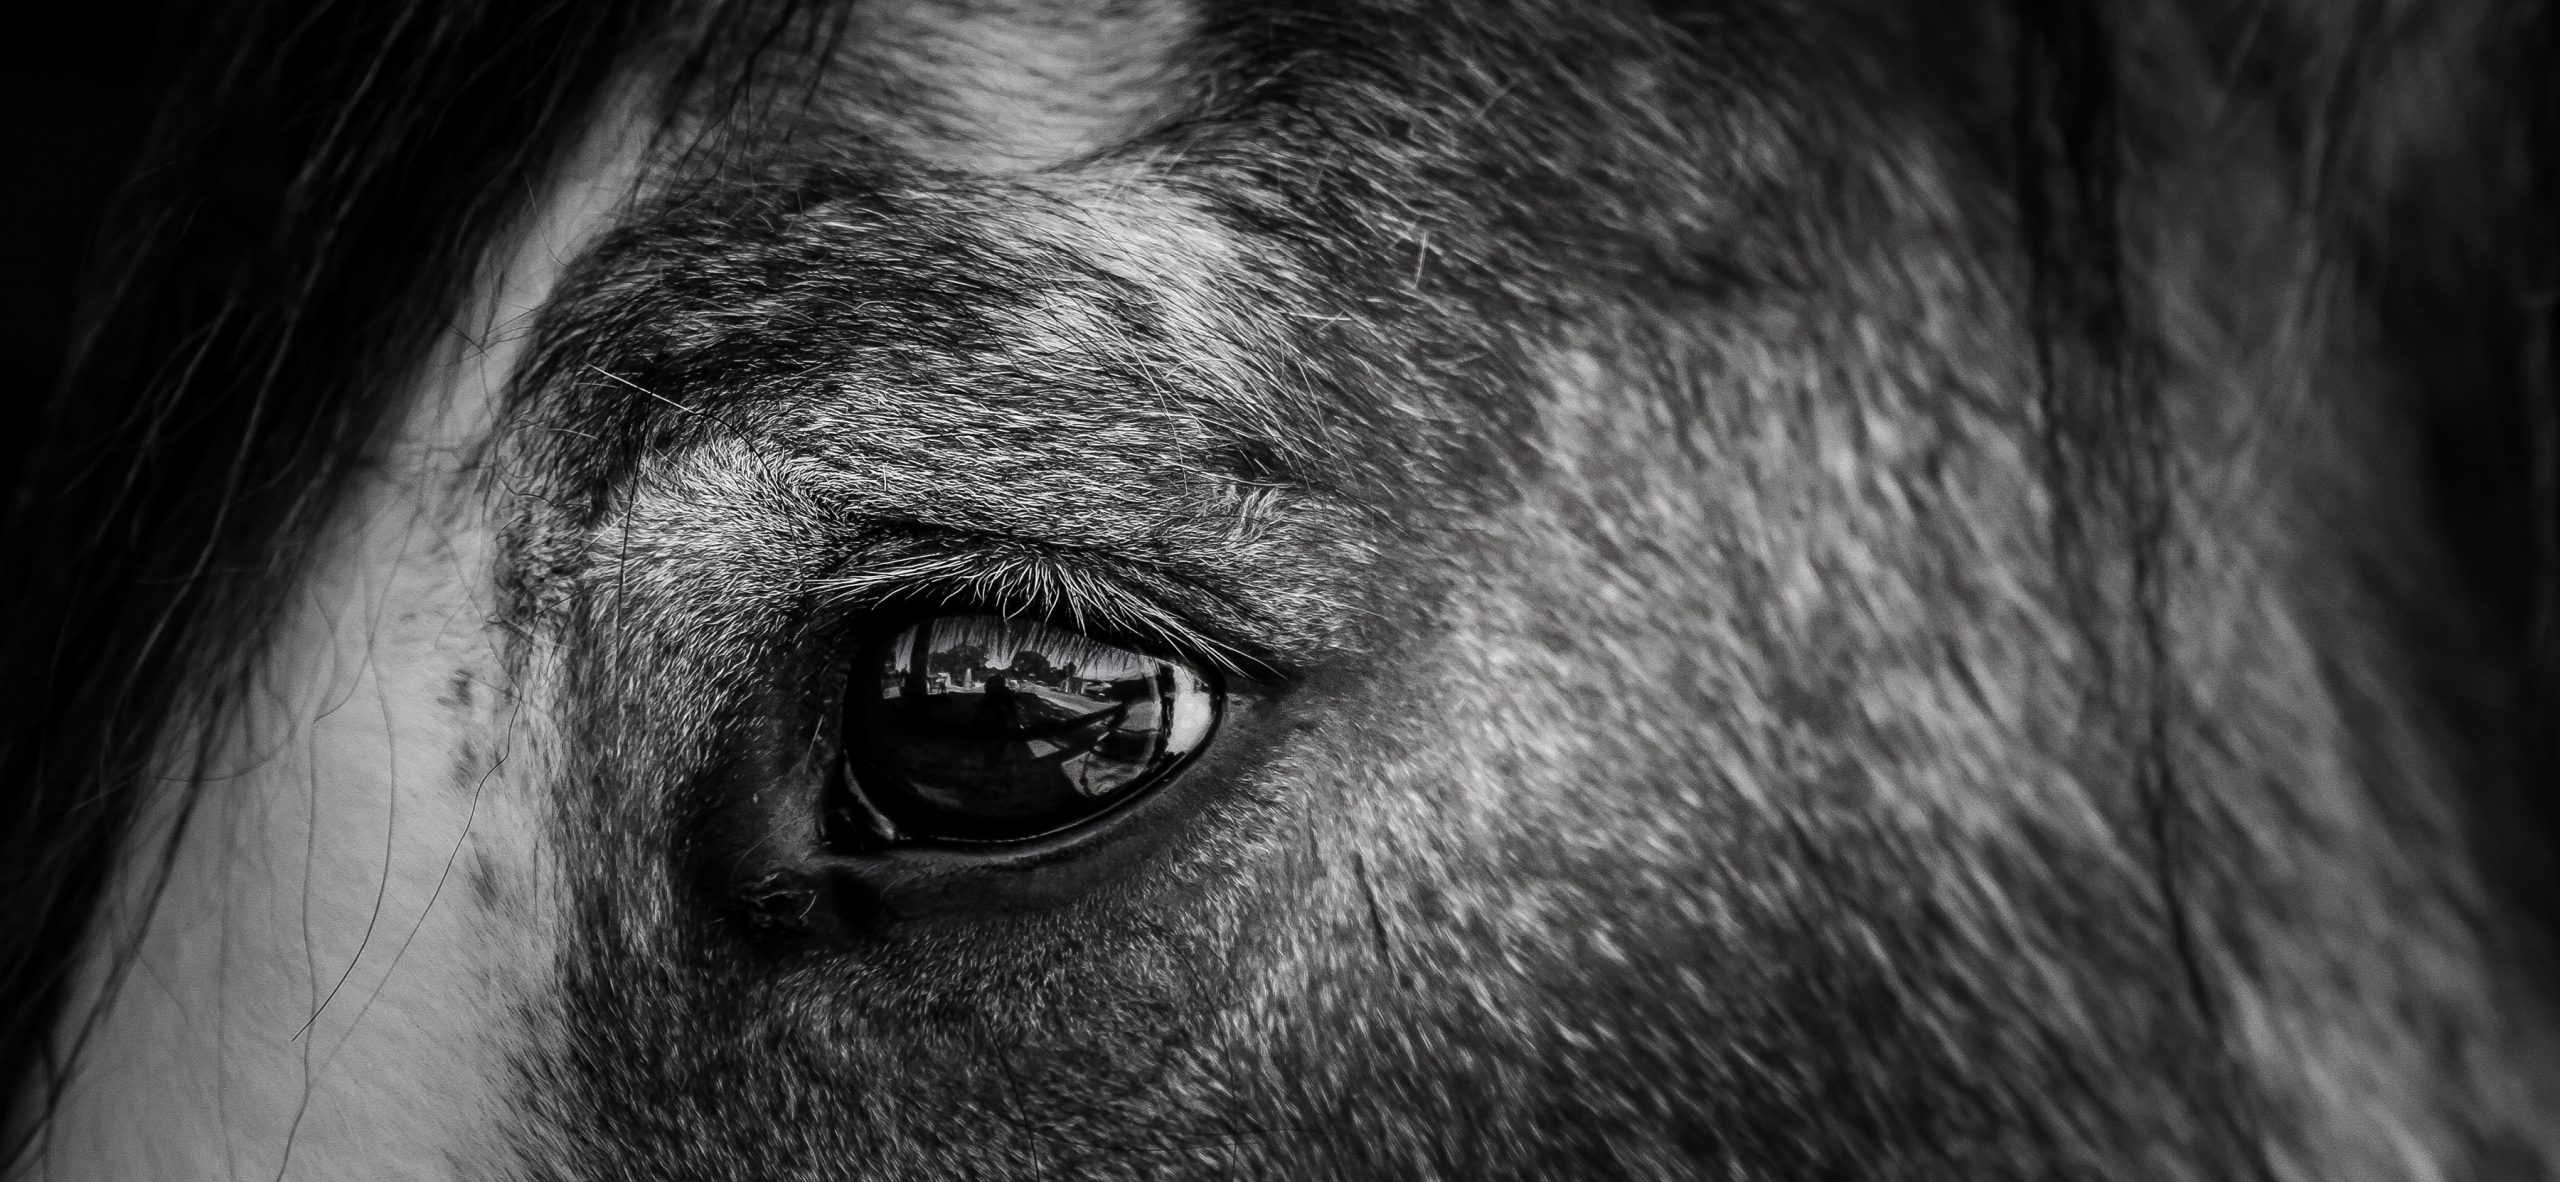 close up of a horse's eye. War Horse. Michael Morpurgo